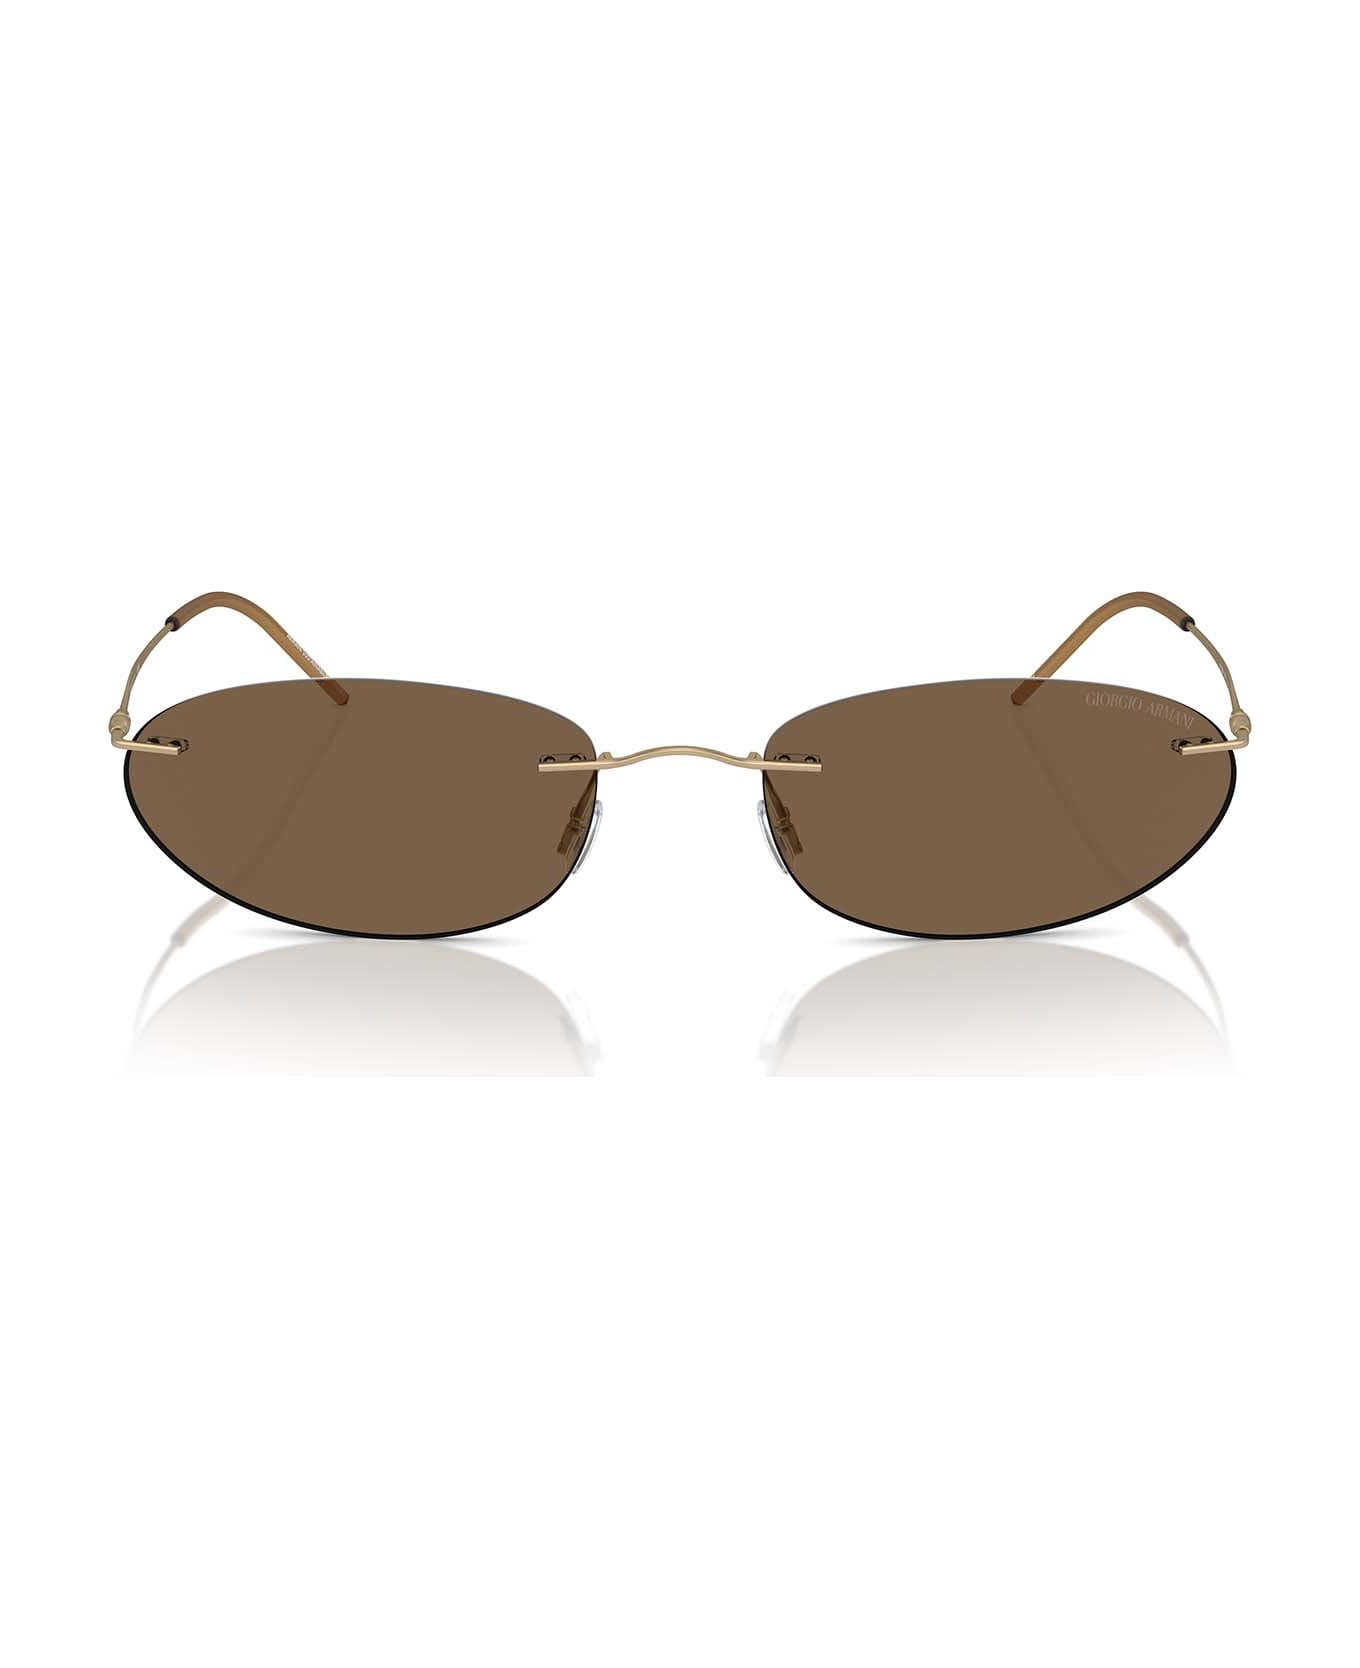 Giorgio Armani Ar1508m Matte Pale Gold Sunglasses - Matte Pale Gold